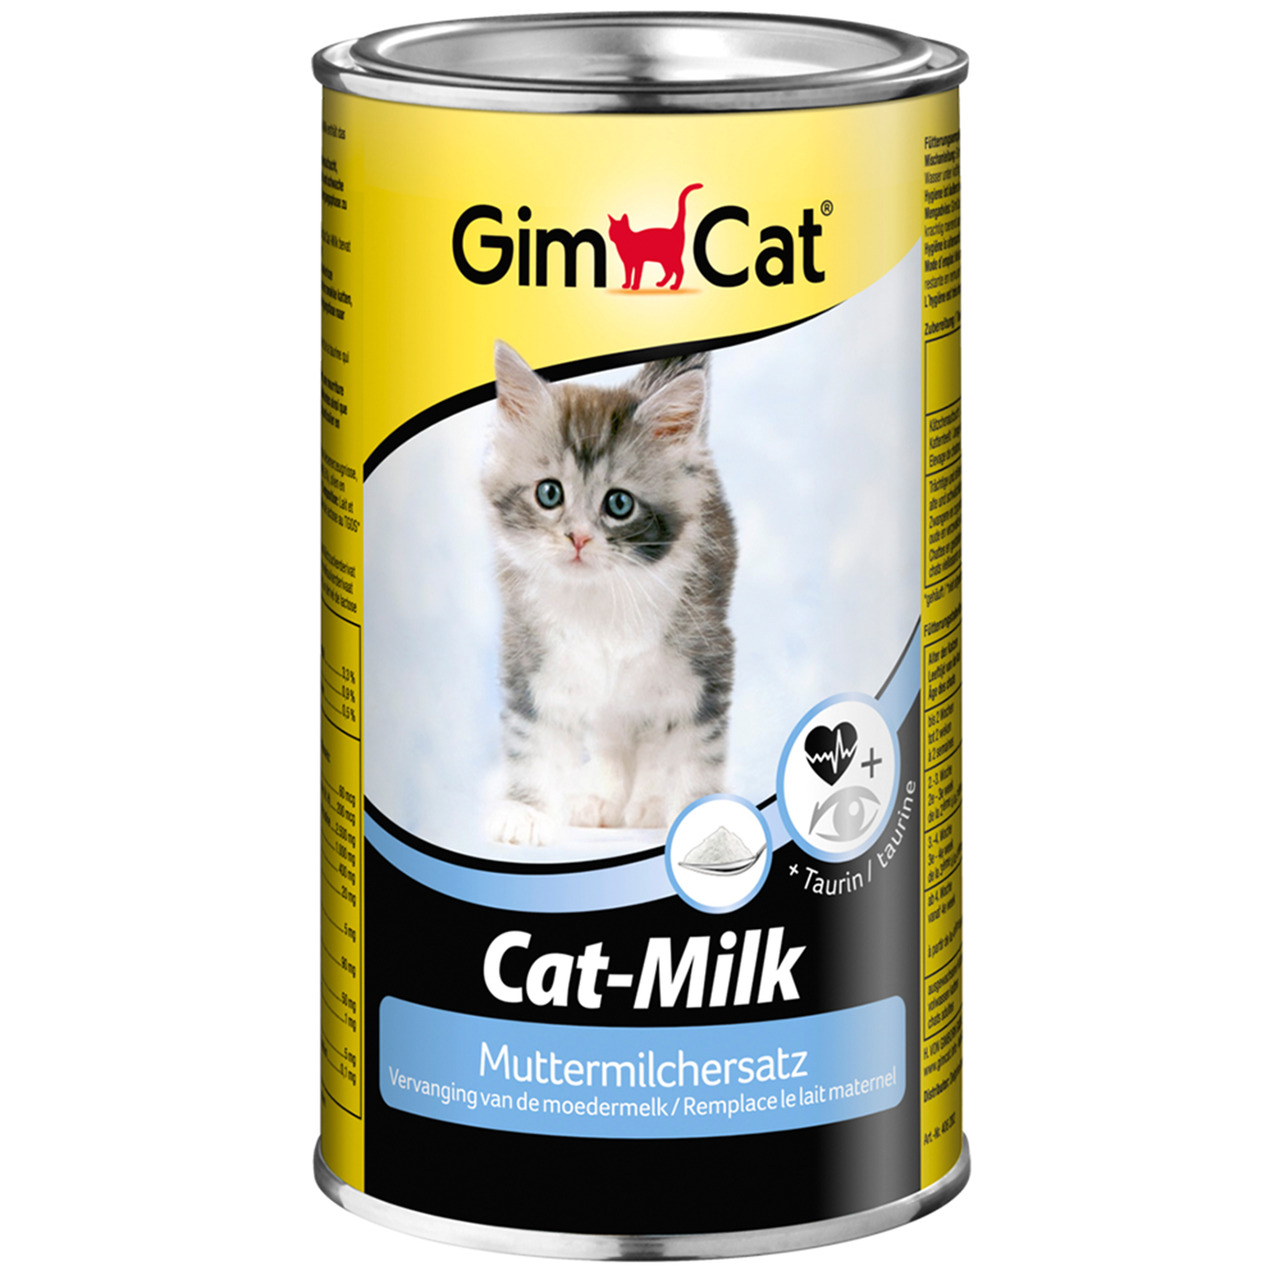 Sparpaket 2 x 200 g GimCat Cat-Milk Muttermilchersatz Katzenmilch